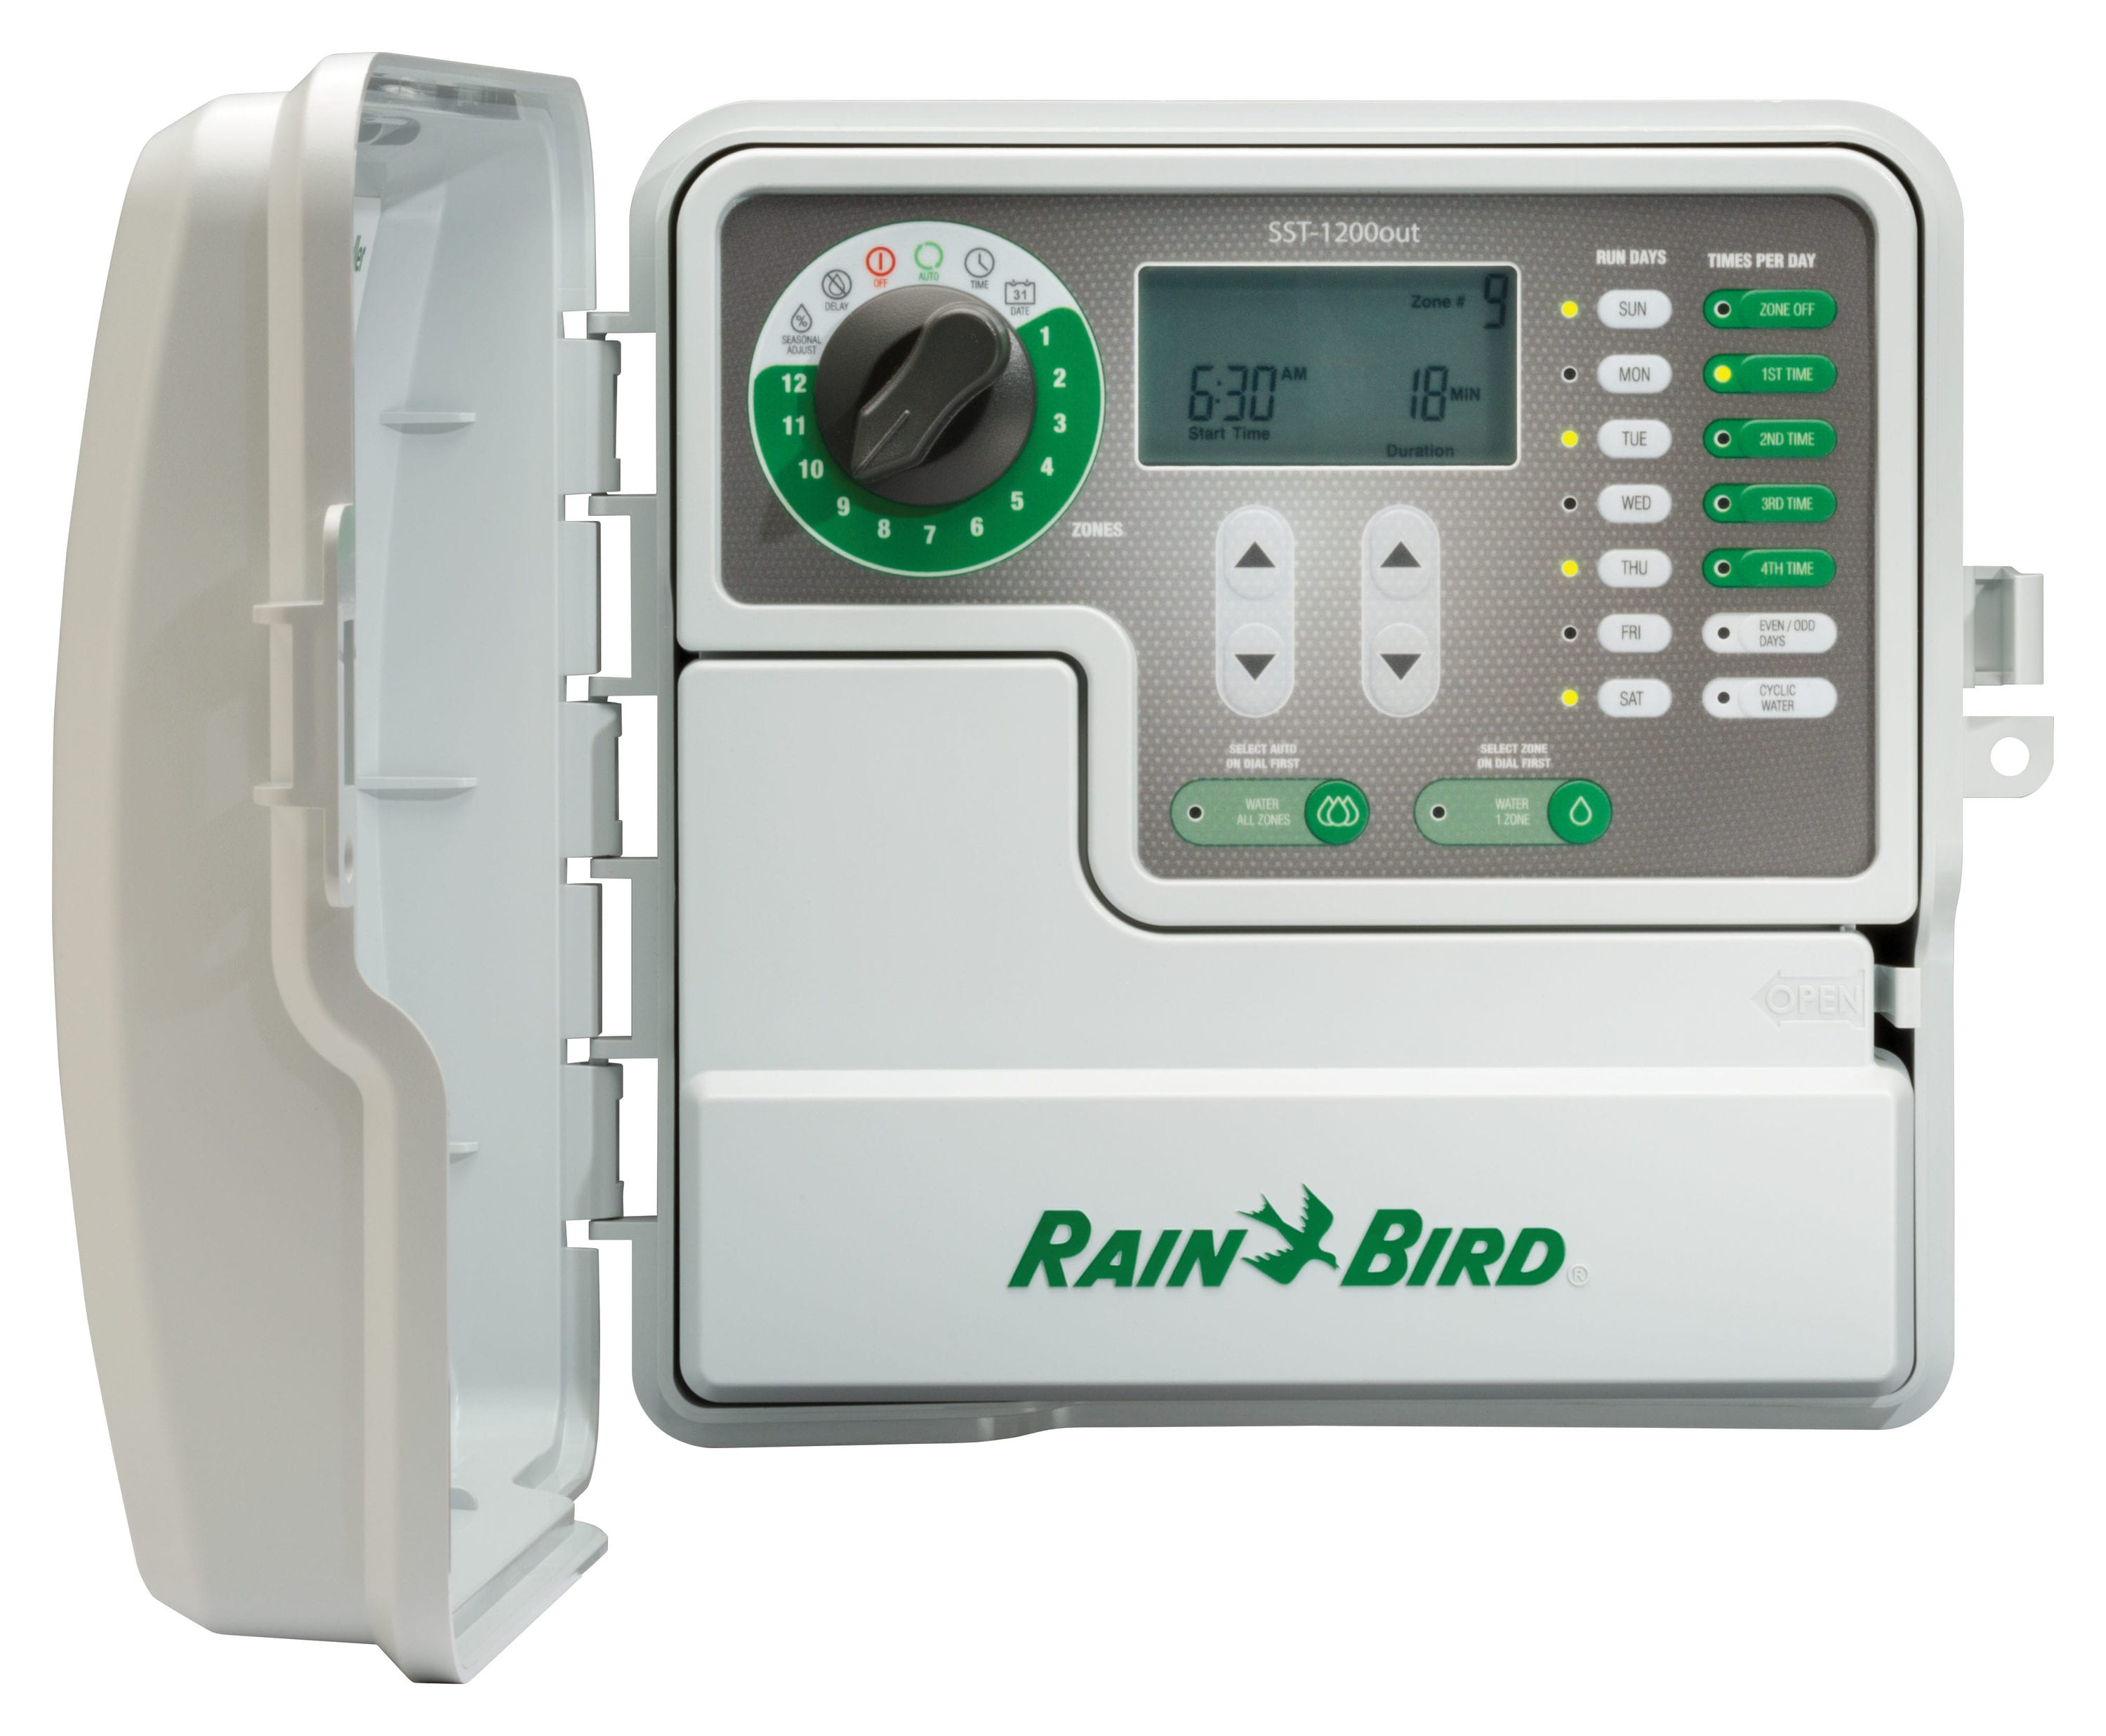 Details about   Rain Bird Smart Irrigation Timer Garden Watering WiFi 8 Zone Outdoor Version 2.0 